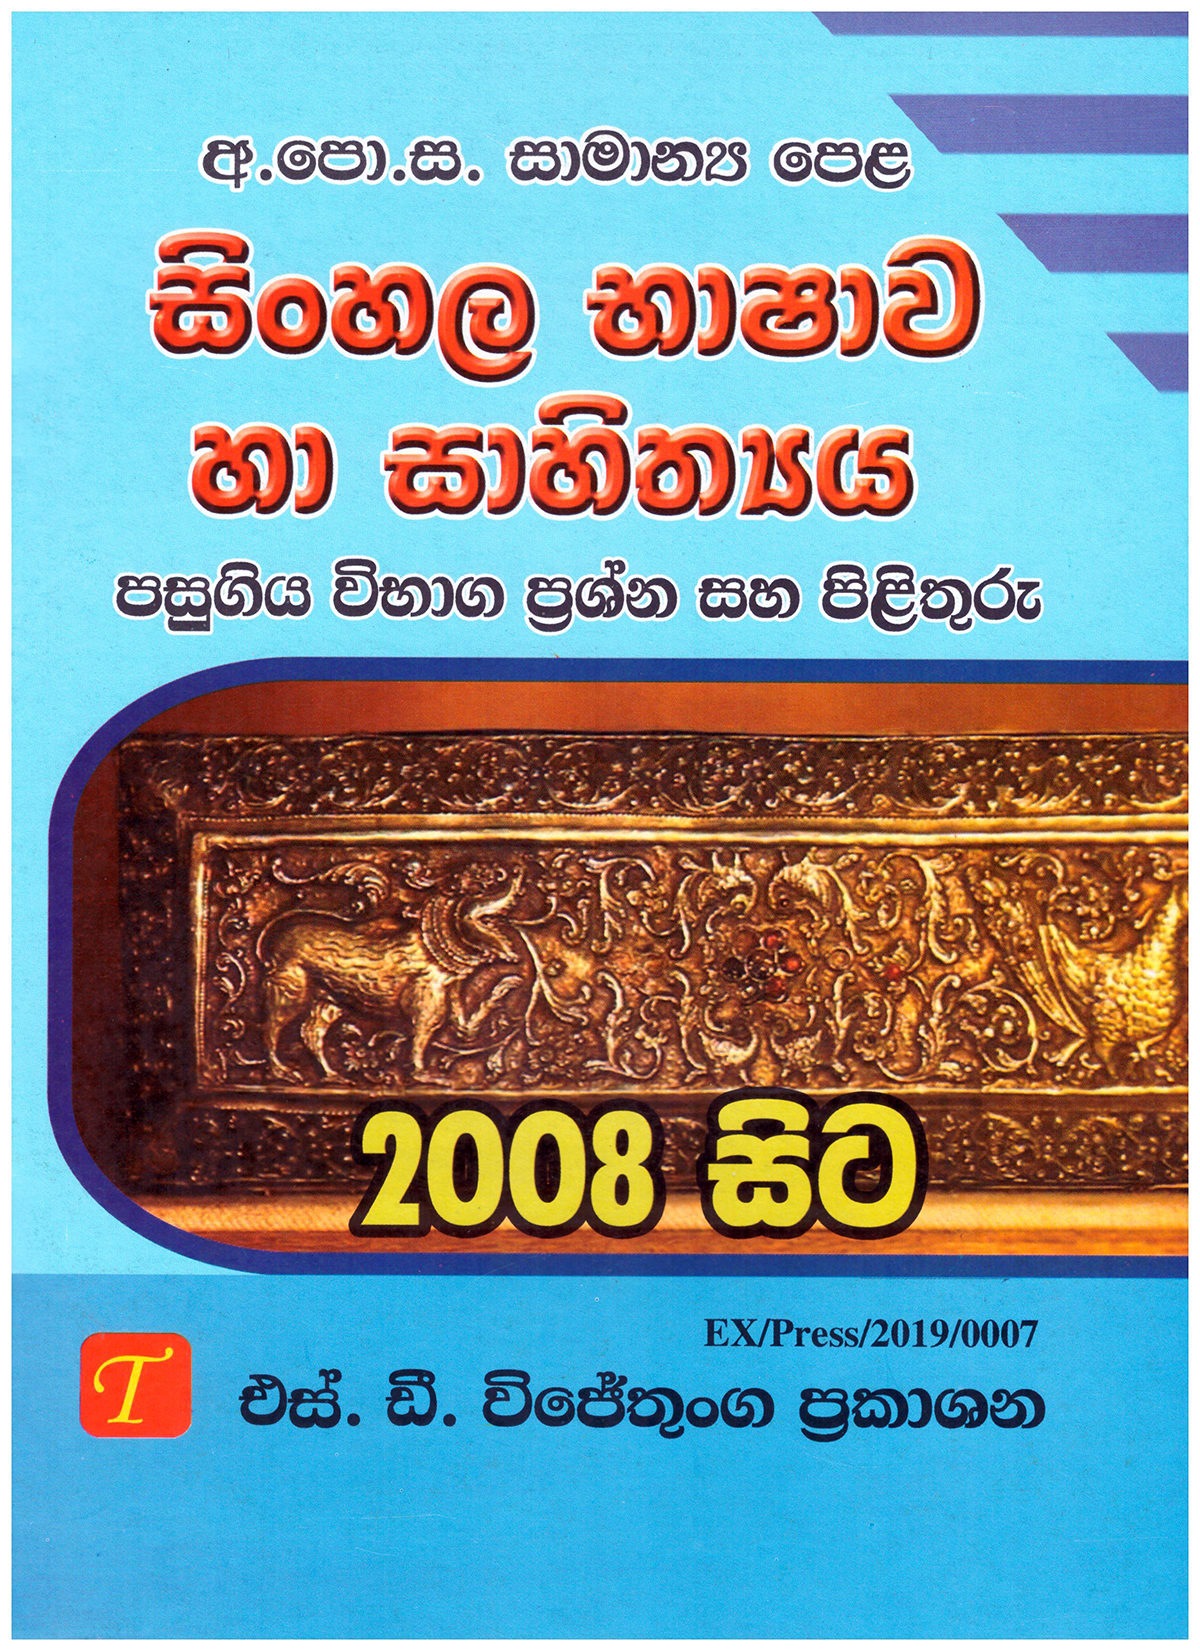 Samanya Pela Sinhala Bashawa Ha Sahithya Pasugiya Vibaga Prashna saha Pilithuru 2008-2019